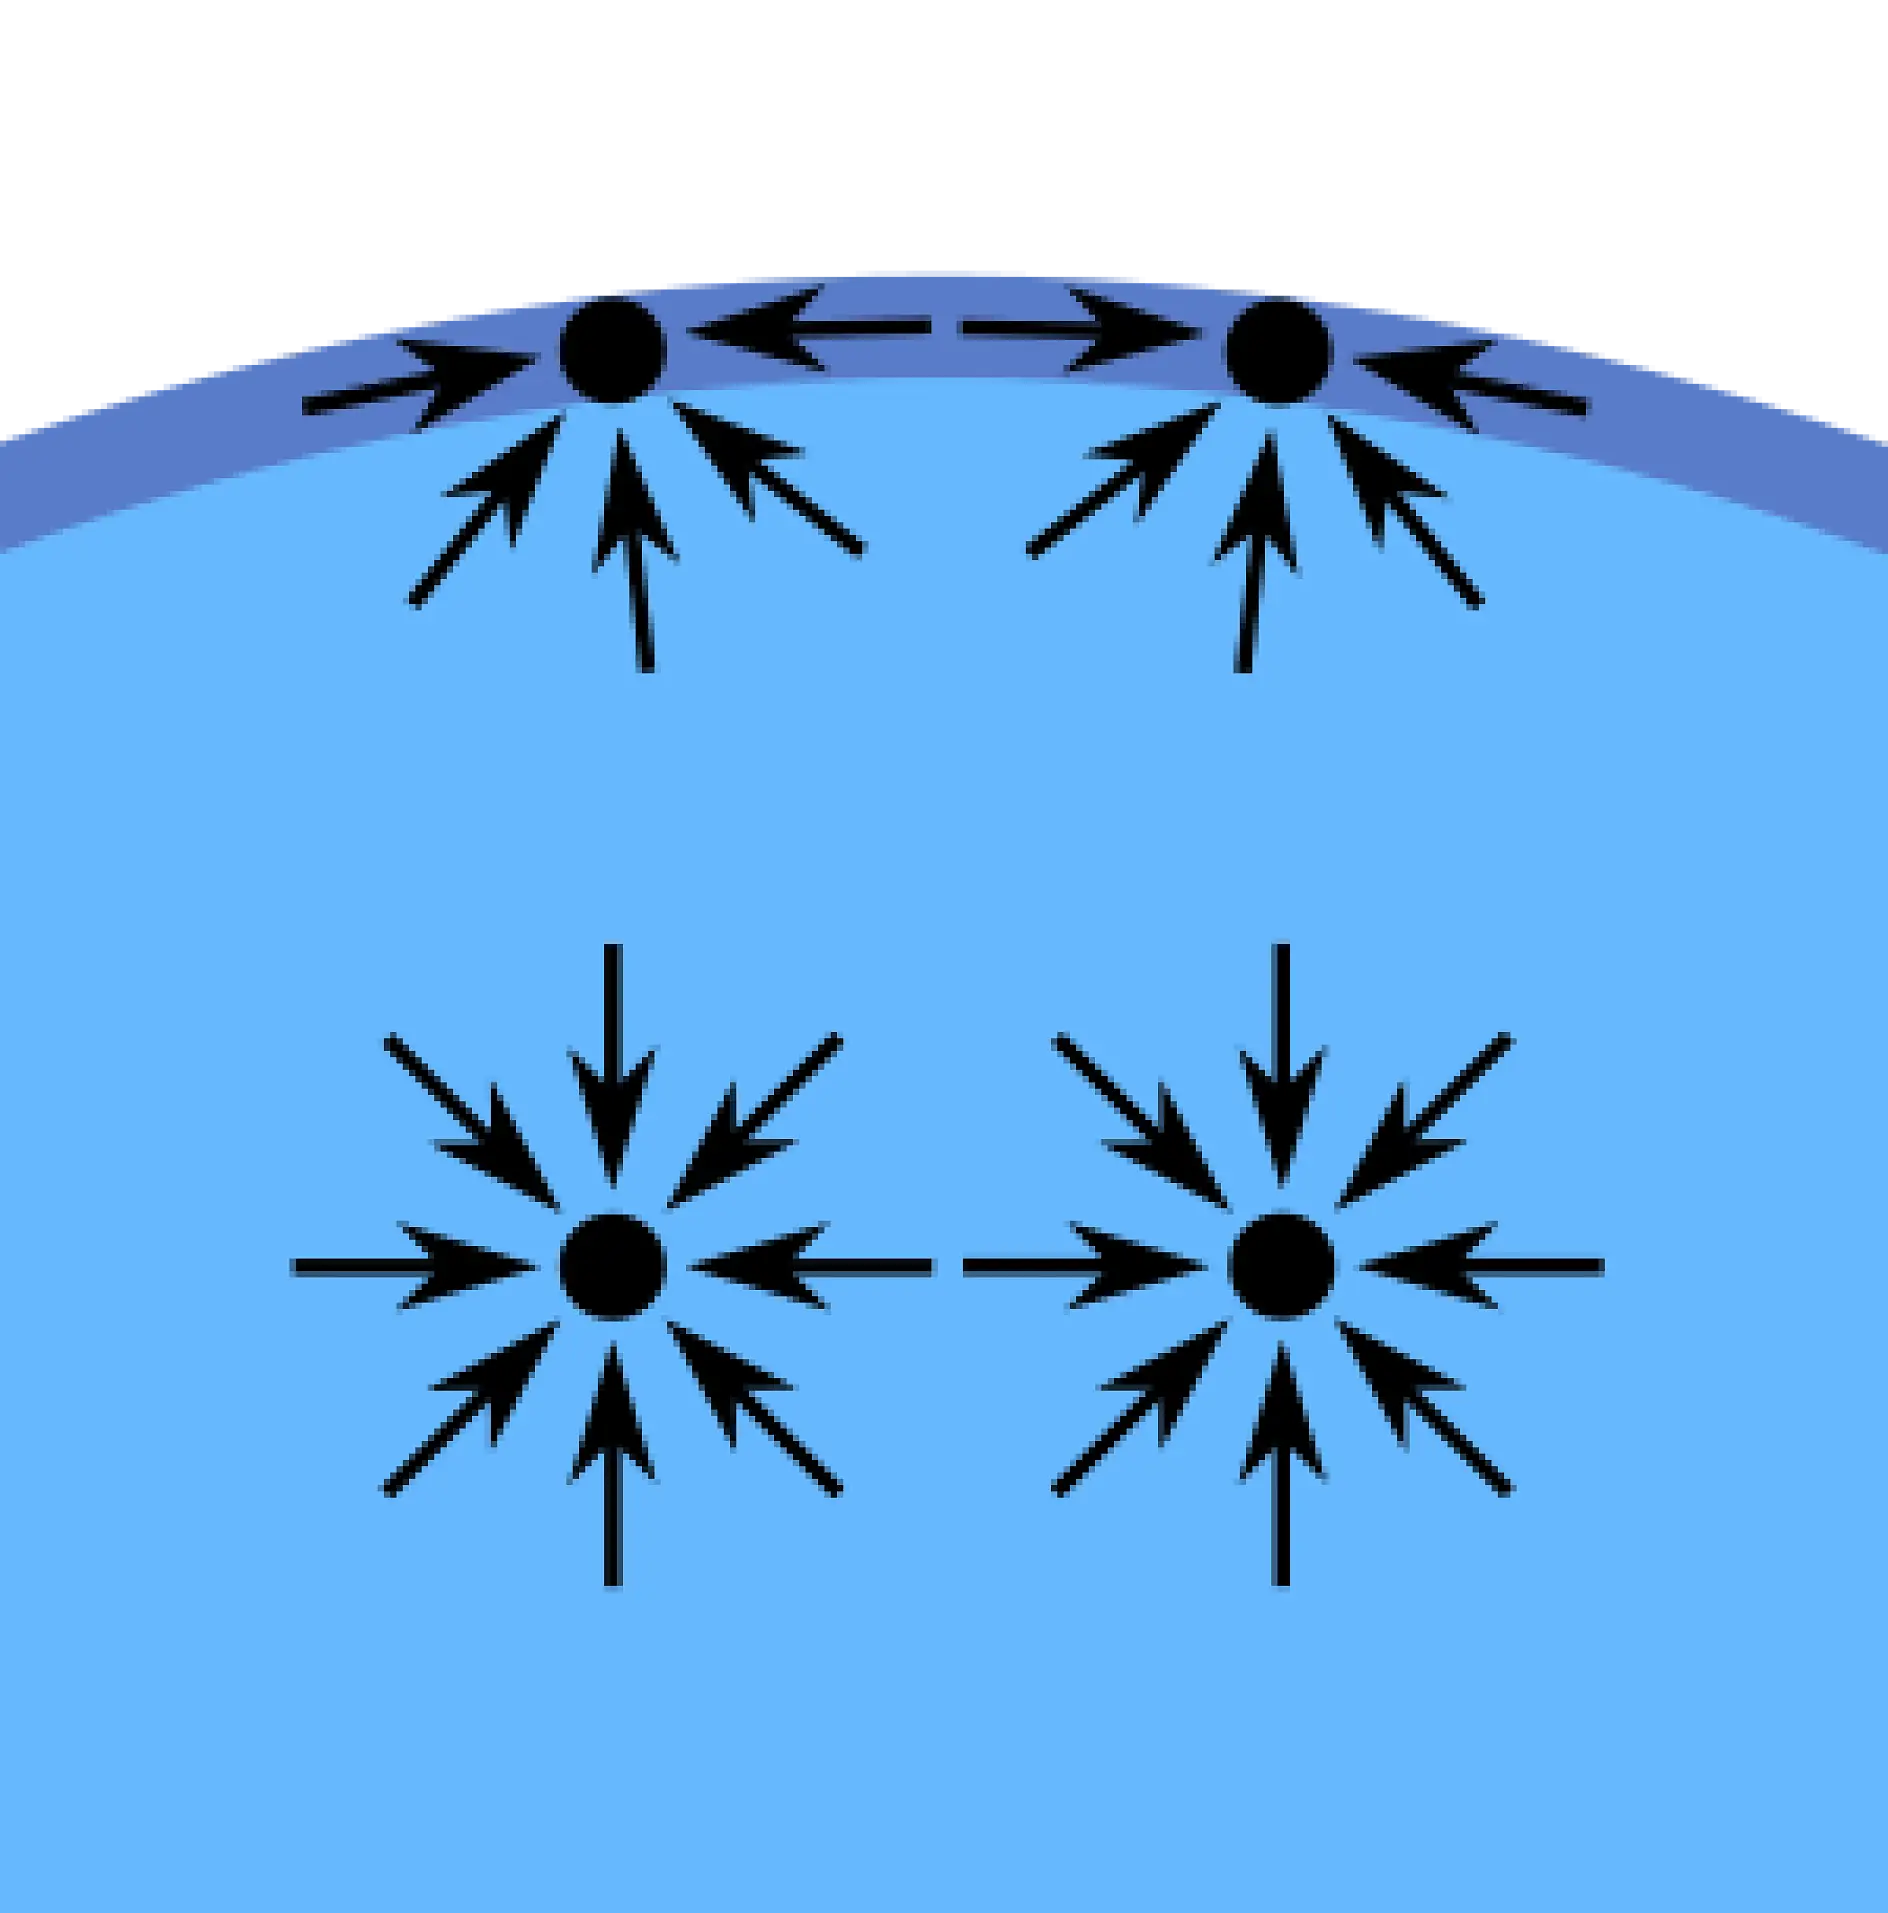 Kohesionskrafterna – i betydelsen (inre) dragningskraft – mellan flytande molekyler skapar ett fenomen som kallas ”ytspänning”. Molekylerna på ytan i ett glas vatten har t.ex. inte andra vattenmolekyler på alla sidor om sig. Så de dras mot insidan av vattnet, de hänger ihop starkare med vattenmolekylerna bredvid och under sig. Denna dragningskraft är högre än den till luftmolekylerna ovanför dem. I slutändan skapar denna inre kraft den yta som skiljer vattnet från luften.